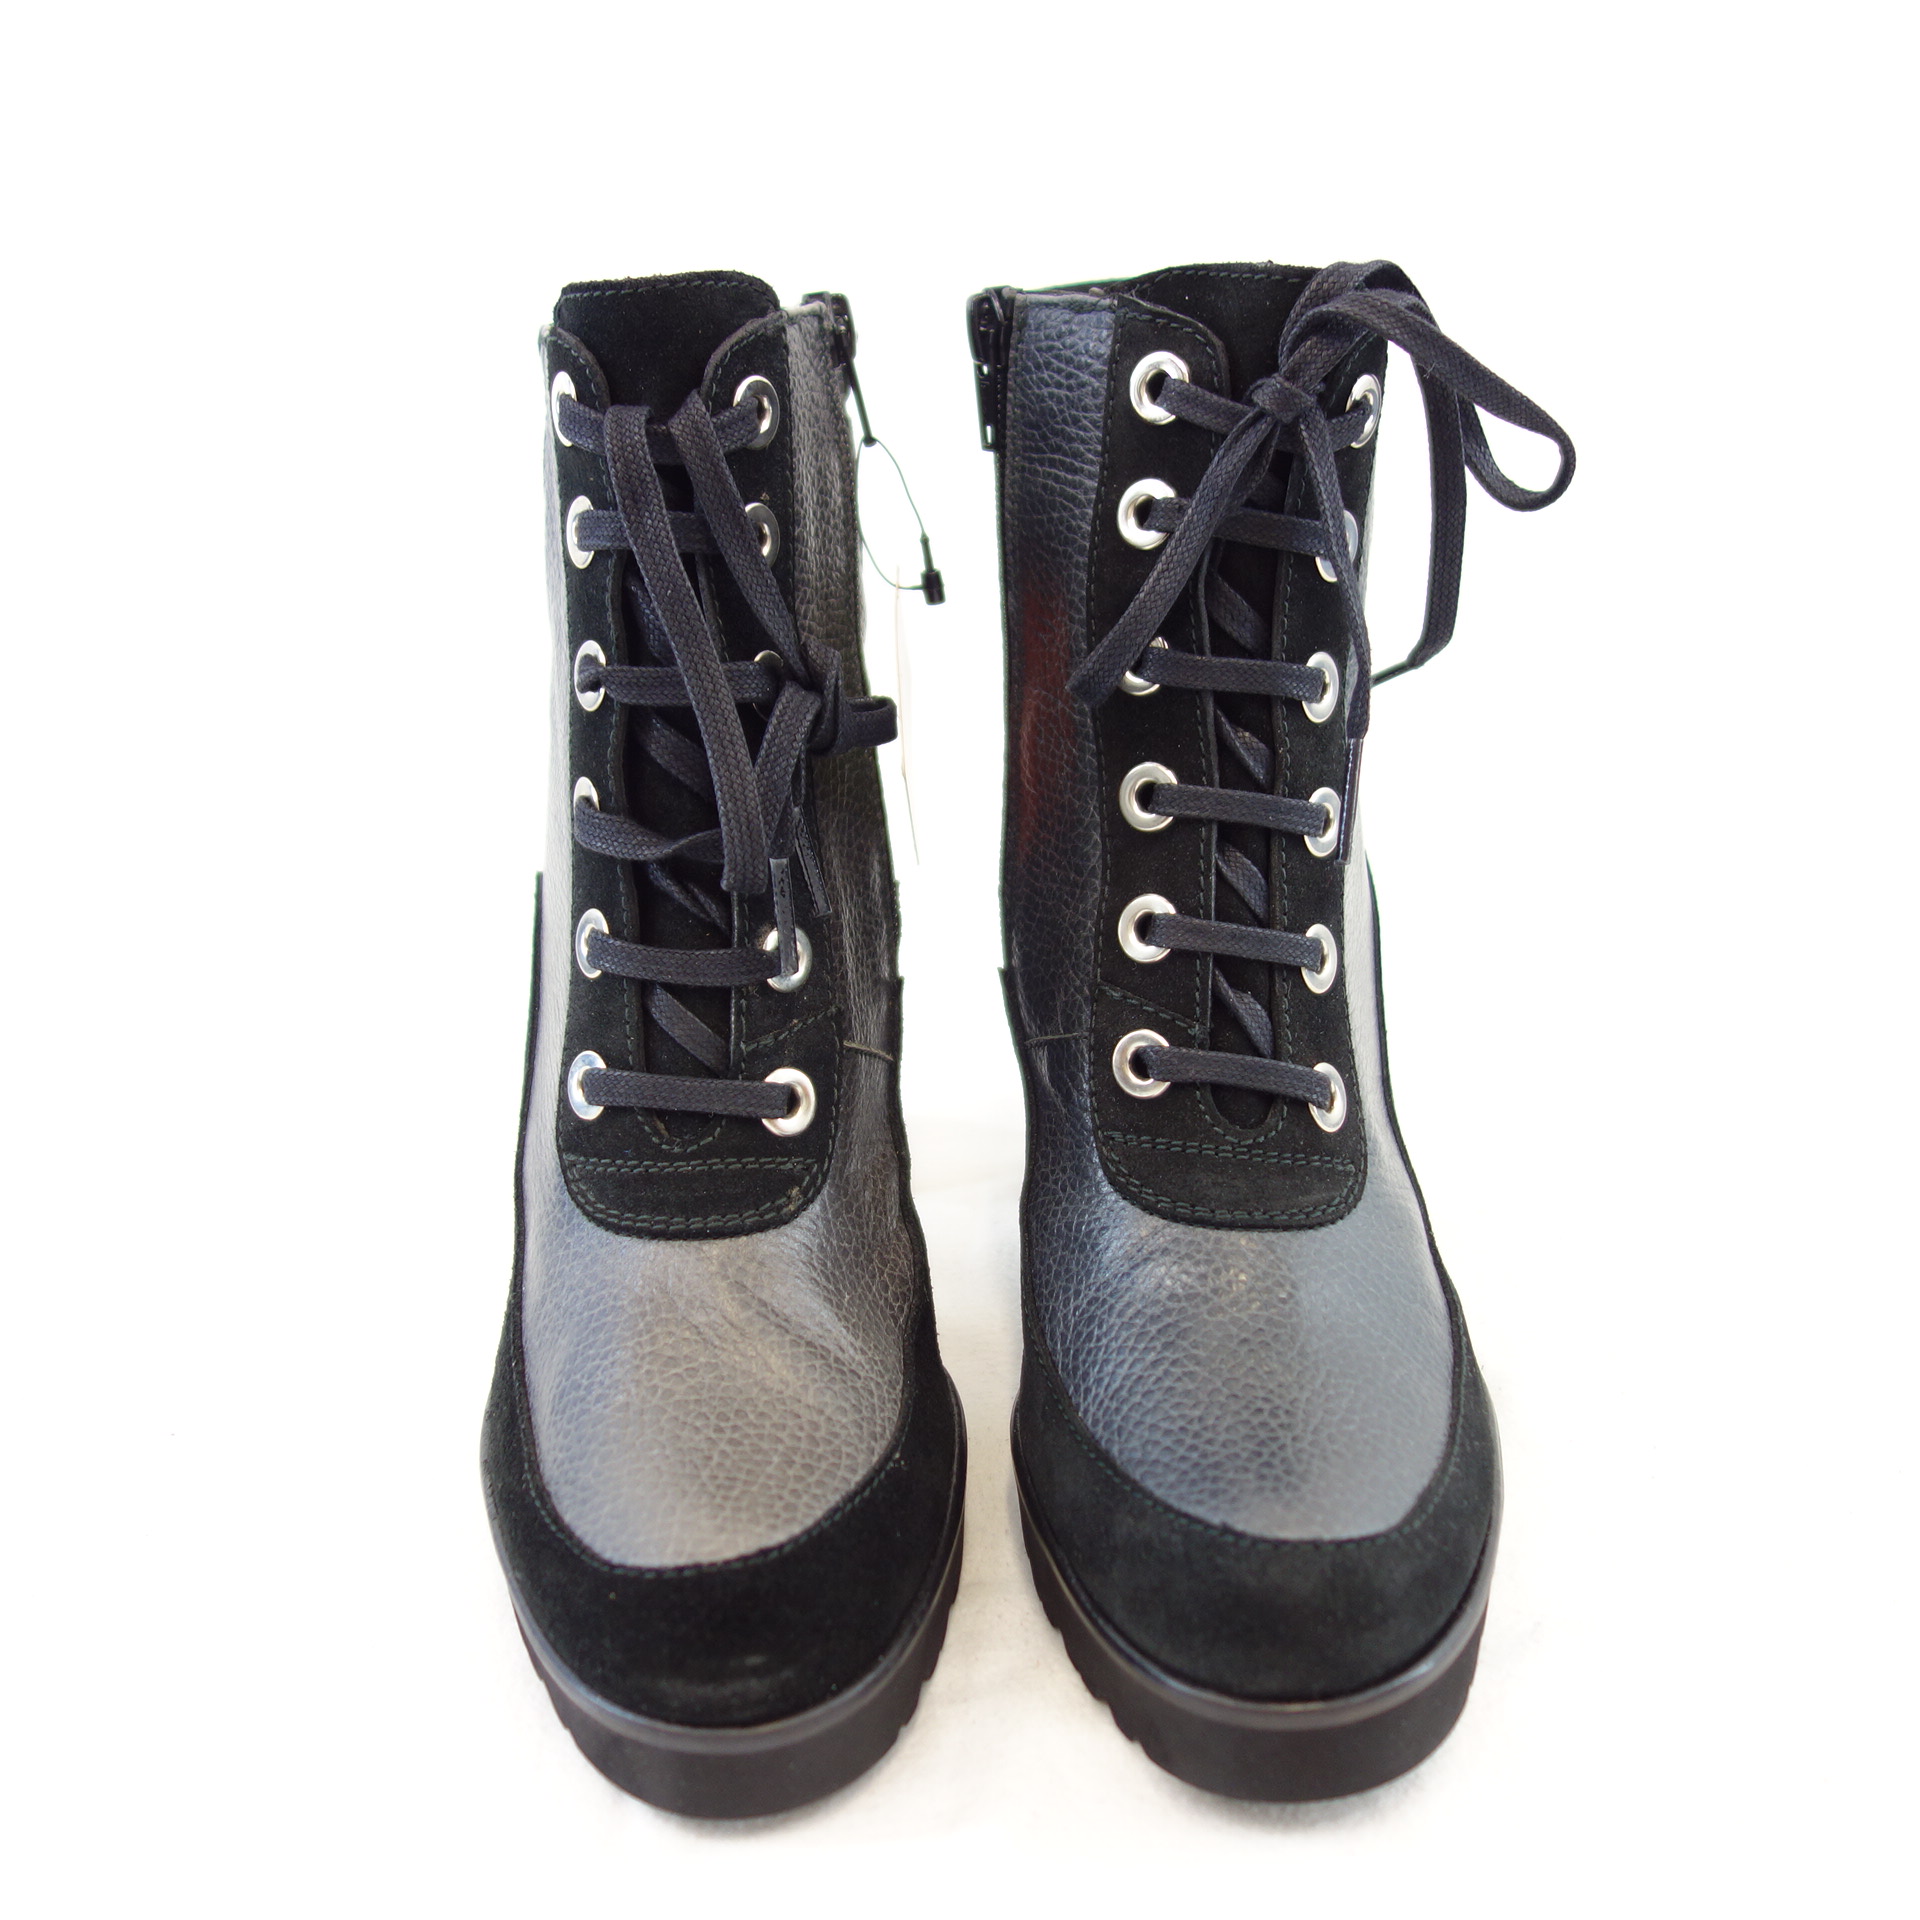 GADEA Damen Schuhe Ankle Boots Stiefeletten Schwarz Leder High Heels Np 179 Neu